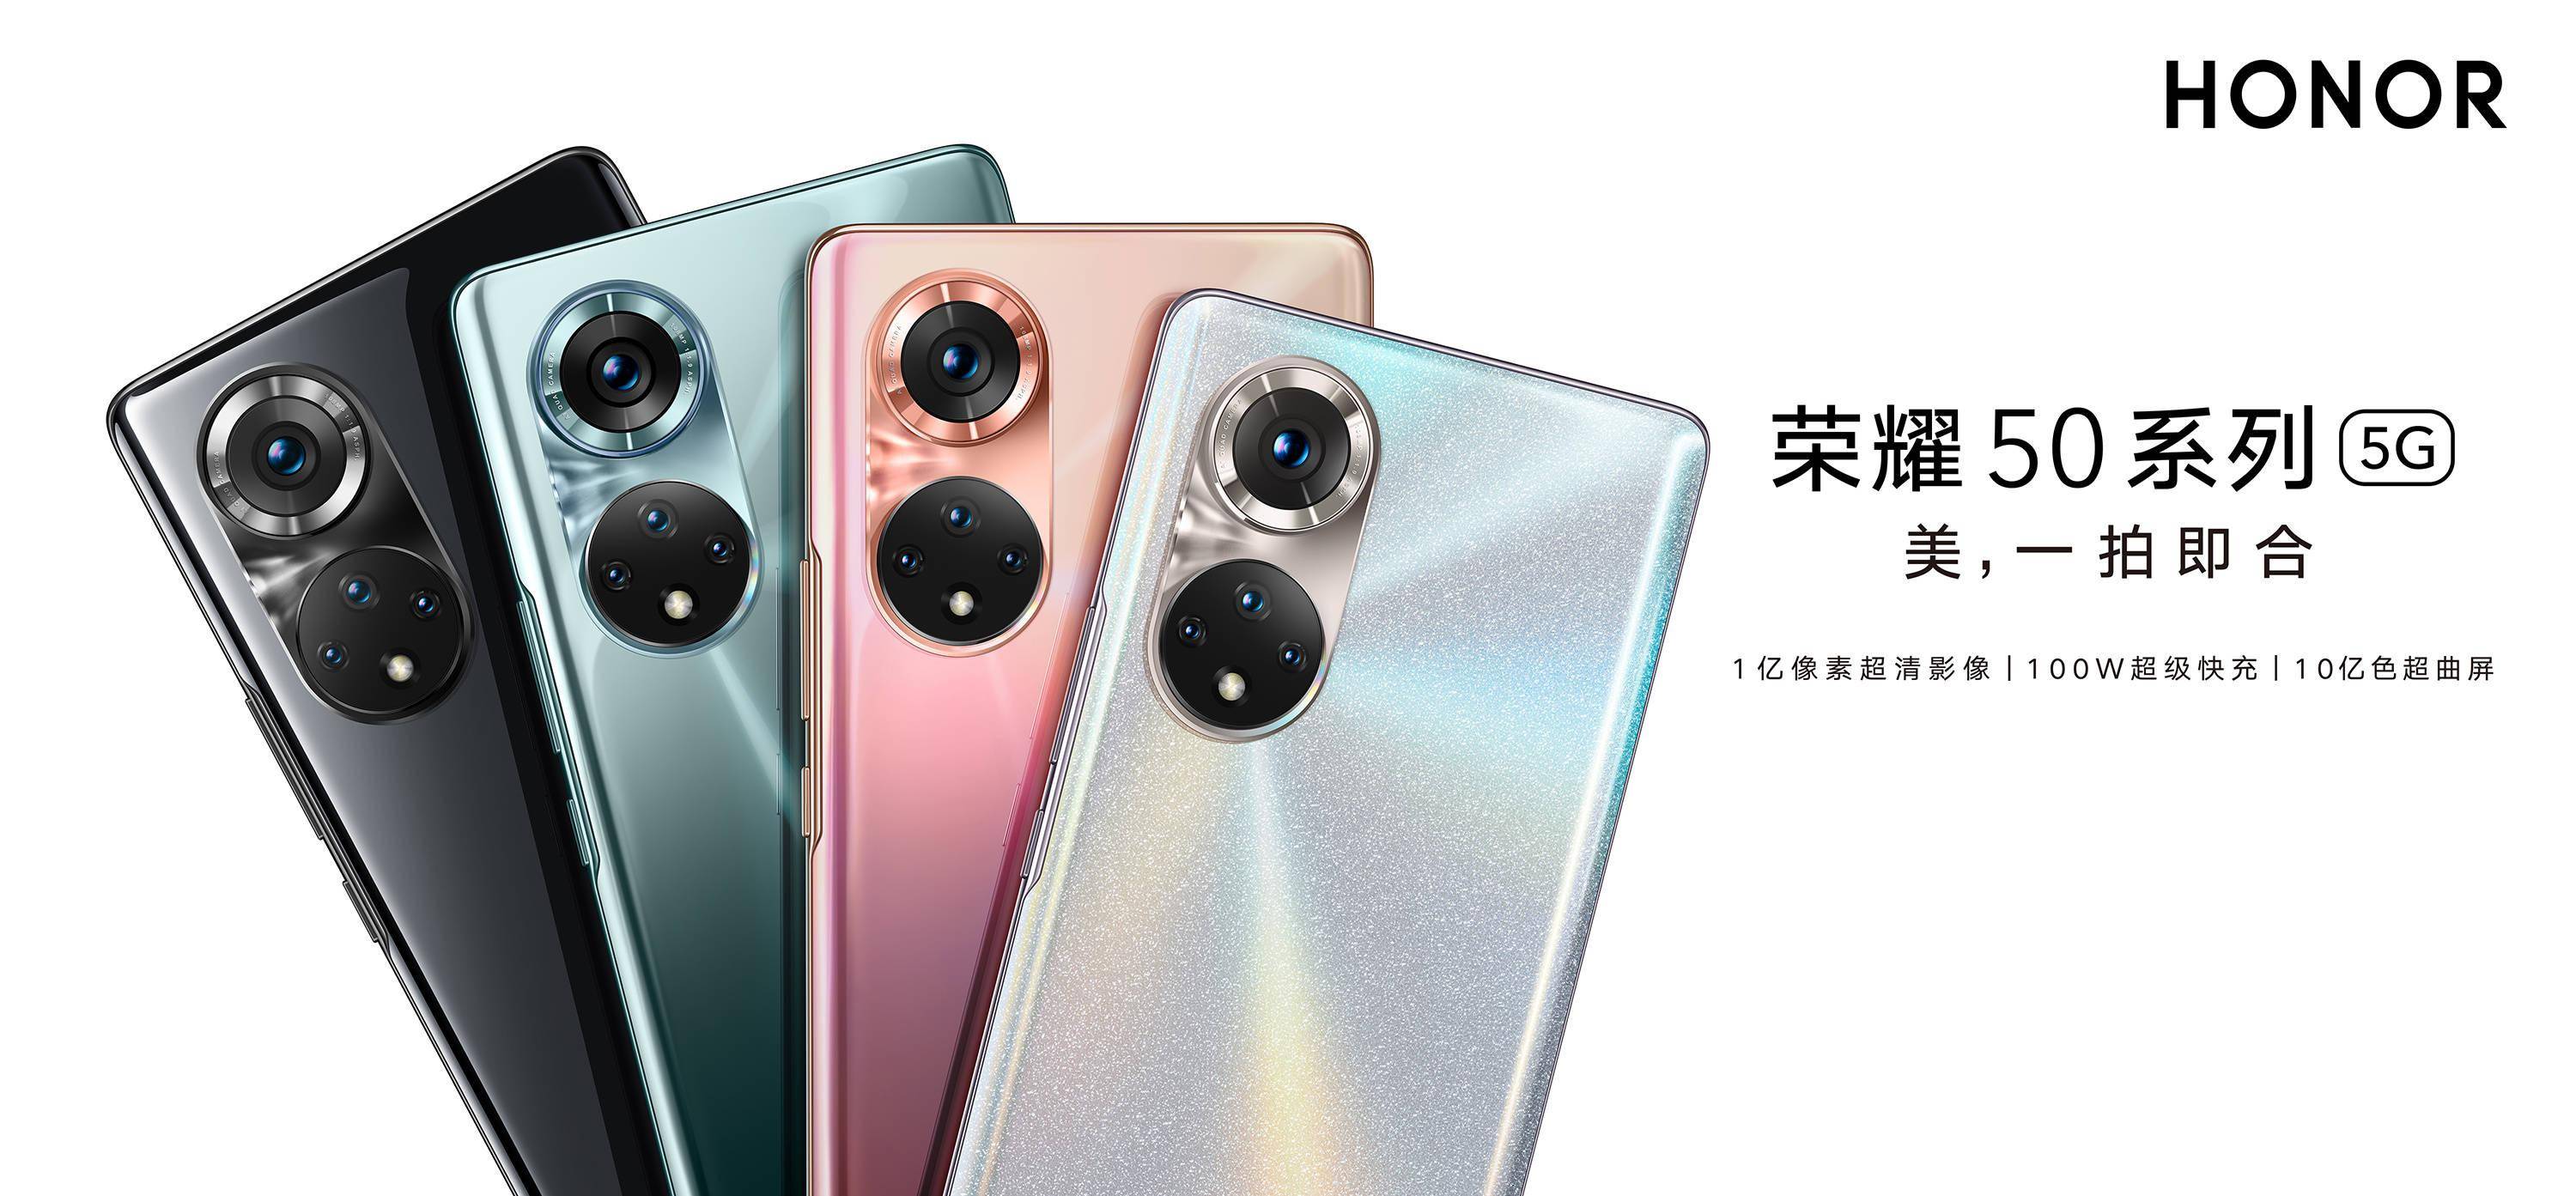 派早报:荣耀发布 50 系列手机,一加并入 oppo,android 设备夏季更新等